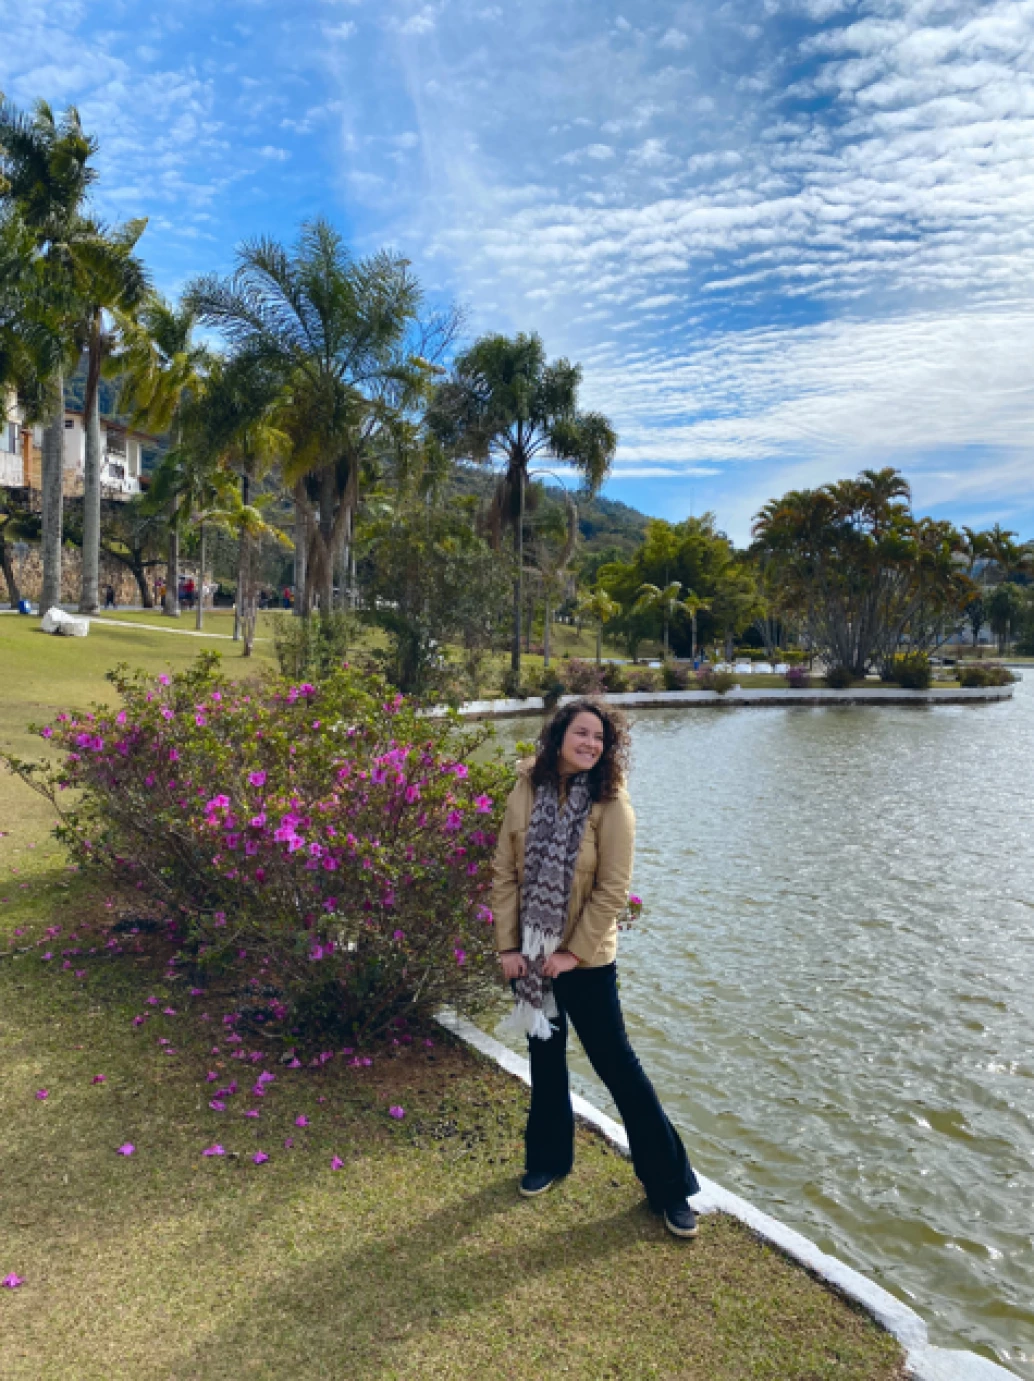 Mulher sorridente posando ao lado de um arbusto florido que na margem de um lago na Praça Adhemar de Barros, em Águas de Lindóia, SP. Ao fundo, grandes coqueiros e densa vegetação se contrastam com o céu azulado.